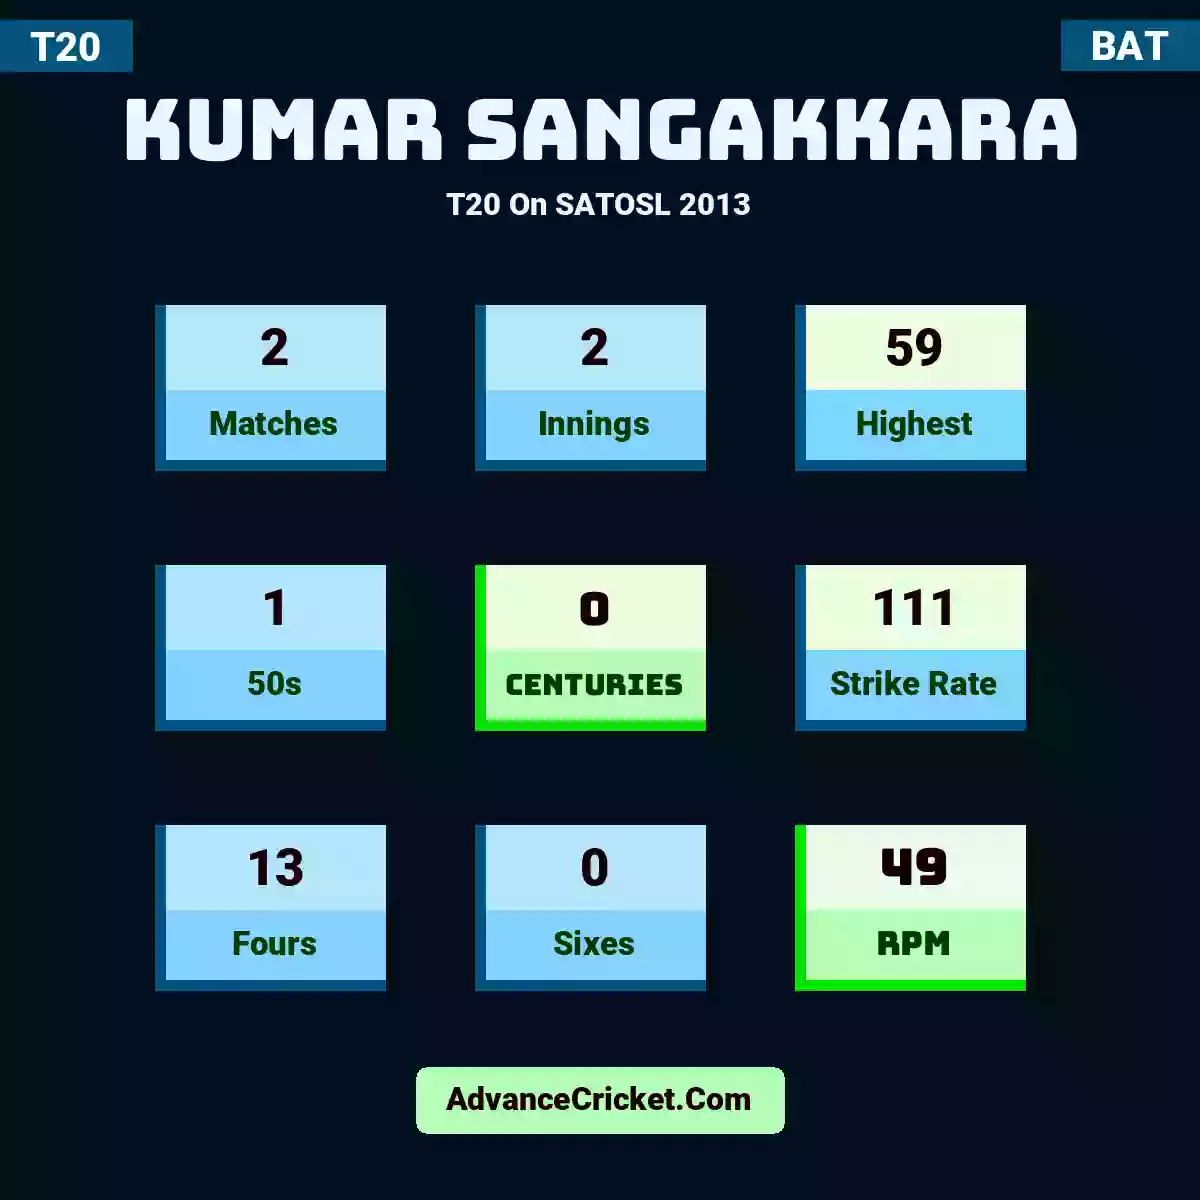 Kumar Sangakkara T20  On SATOSL 2013, Kumar Sangakkara played 2 matches, scored 59 runs as highest, 1 half-centuries, and 0 centuries, with a strike rate of 111. K.Sangakkara hit 13 fours and 0 sixes, with an RPM of 49.